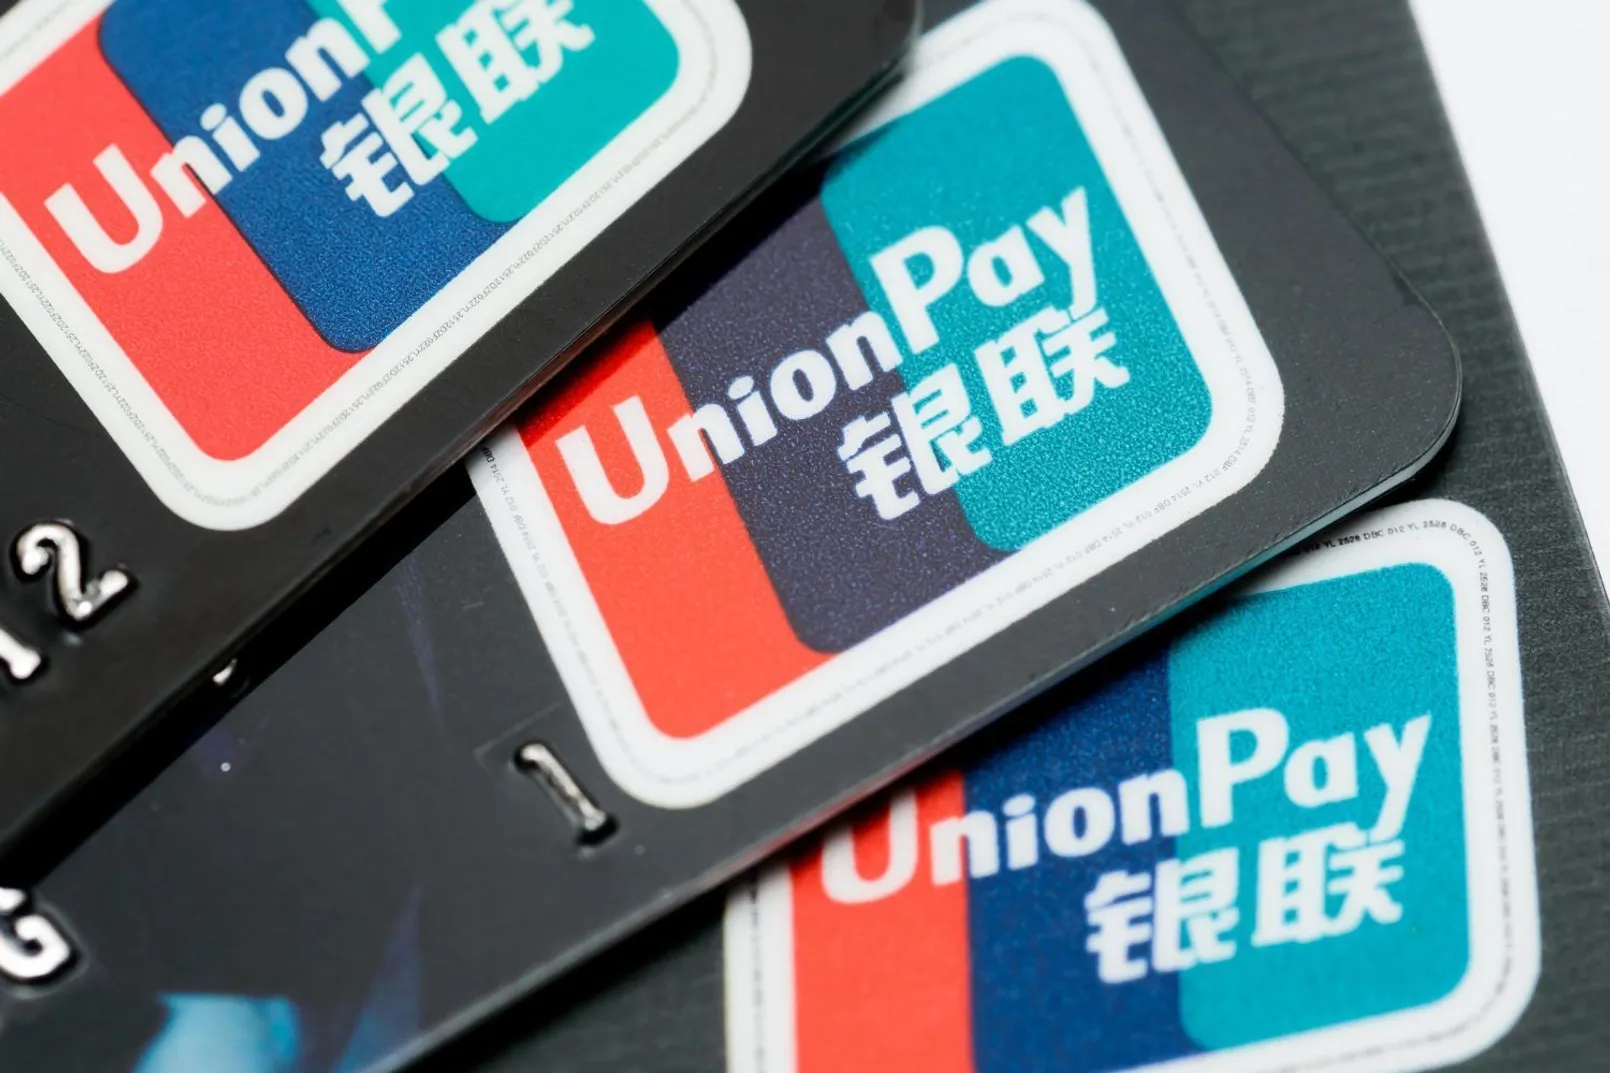 Union Pay.jpg